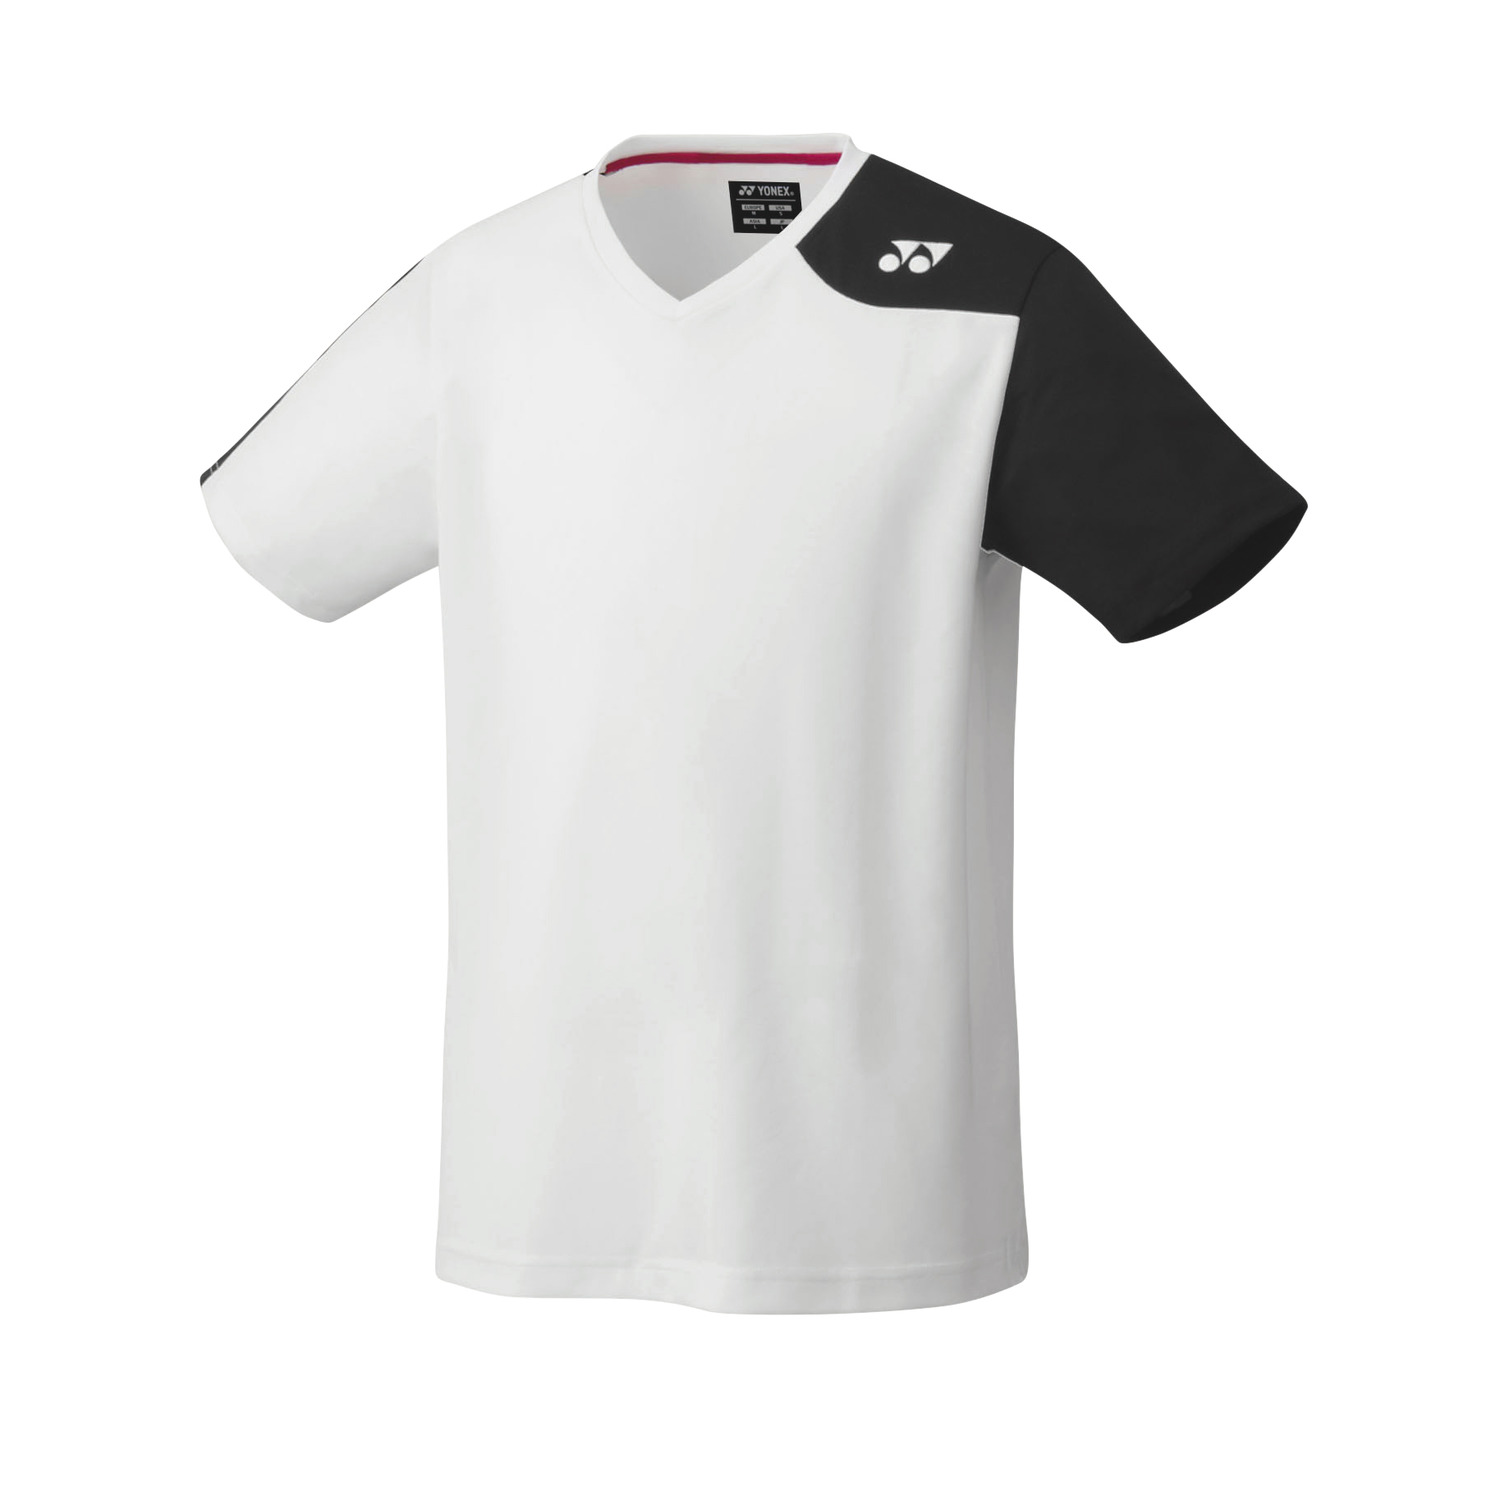 ユニゲームシャツ(フィットスタイル). 1046410464ヨネックス公式オンラインショップ